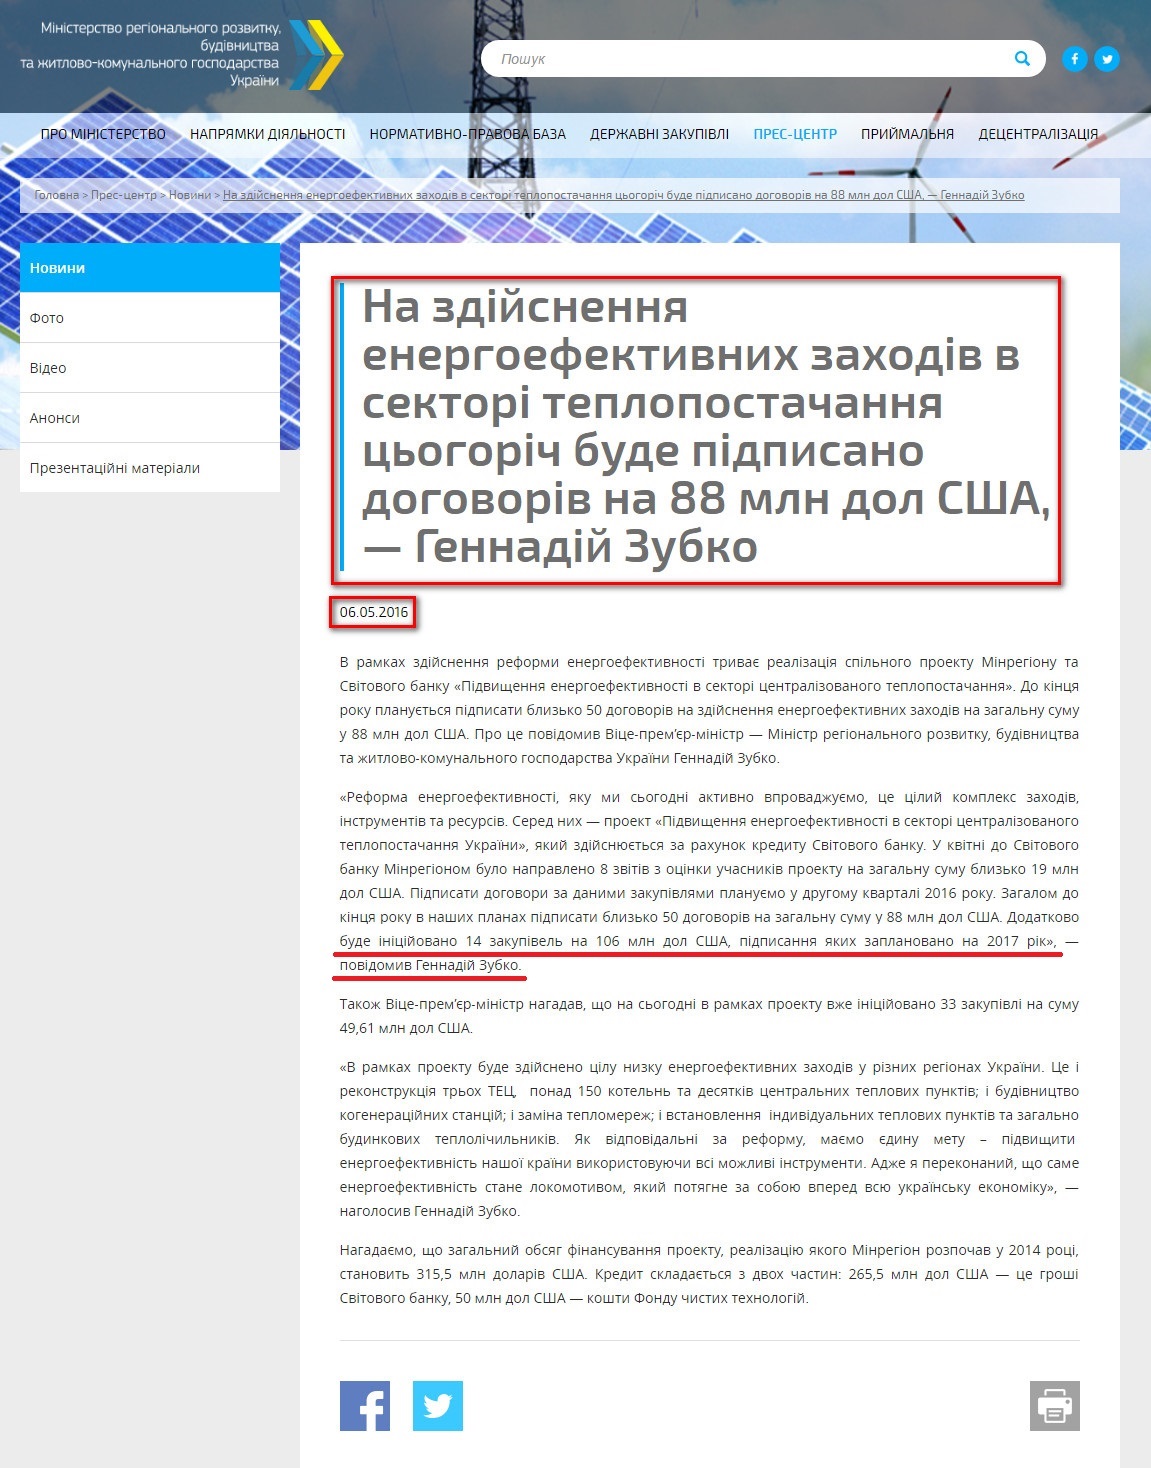 http://www.minregion.gov.ua/press/news/na-zdiysnennya-energoefektivnih-zahodiv-v-sektori-teplopostachannya-tsogorich-bude-pidpisano-dogovoriv-na-88-mln-dol-ssha-gennadiy-zubko/